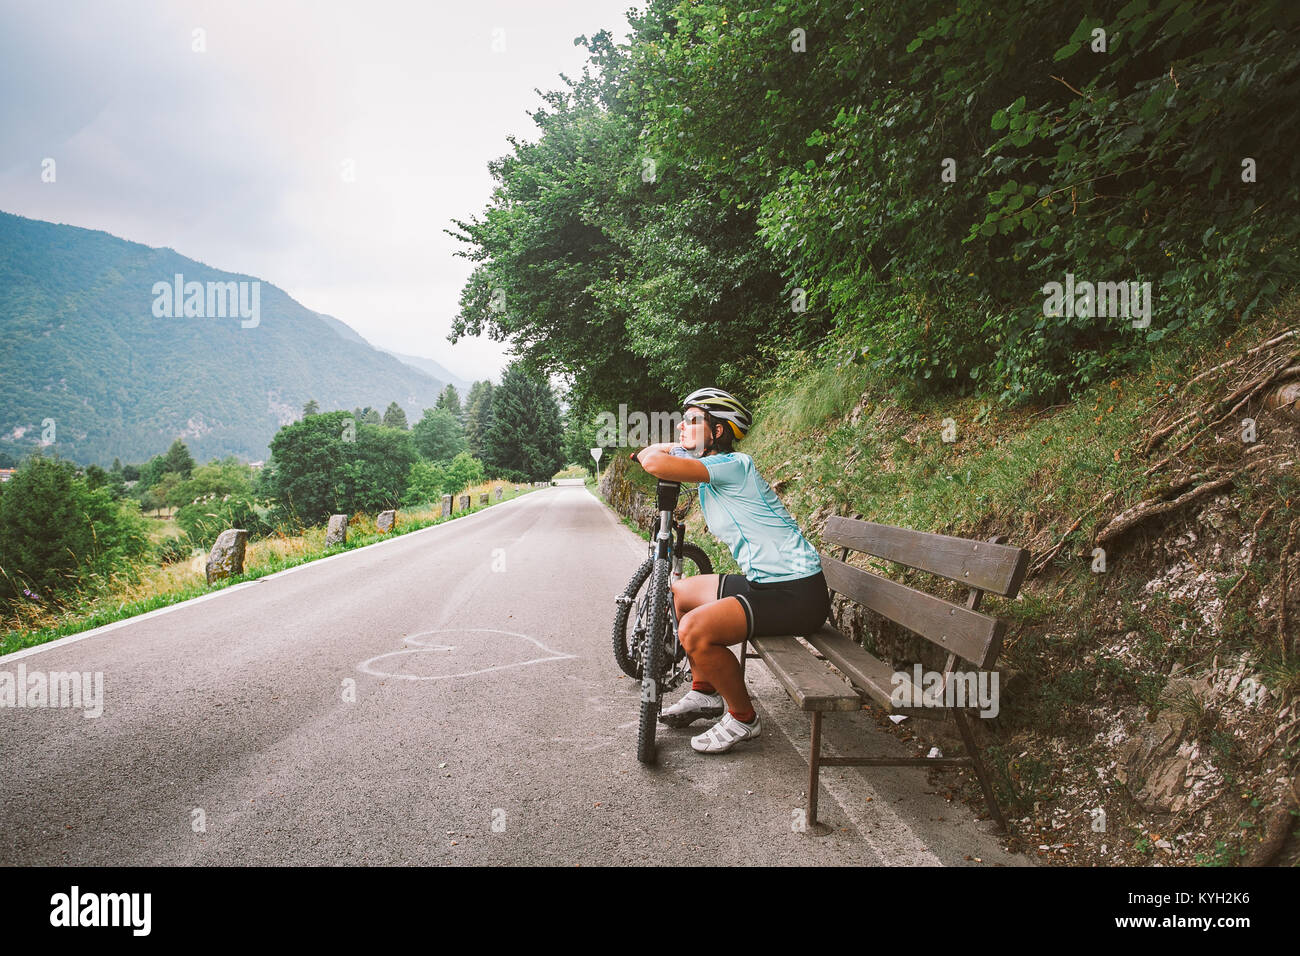 Jeune fille dans un casque et des vêtements de sport et de rêves de repos assis regardant dans la distance sur un banc en bois sur une piste cyclable en Italie en moun Banque D'Images